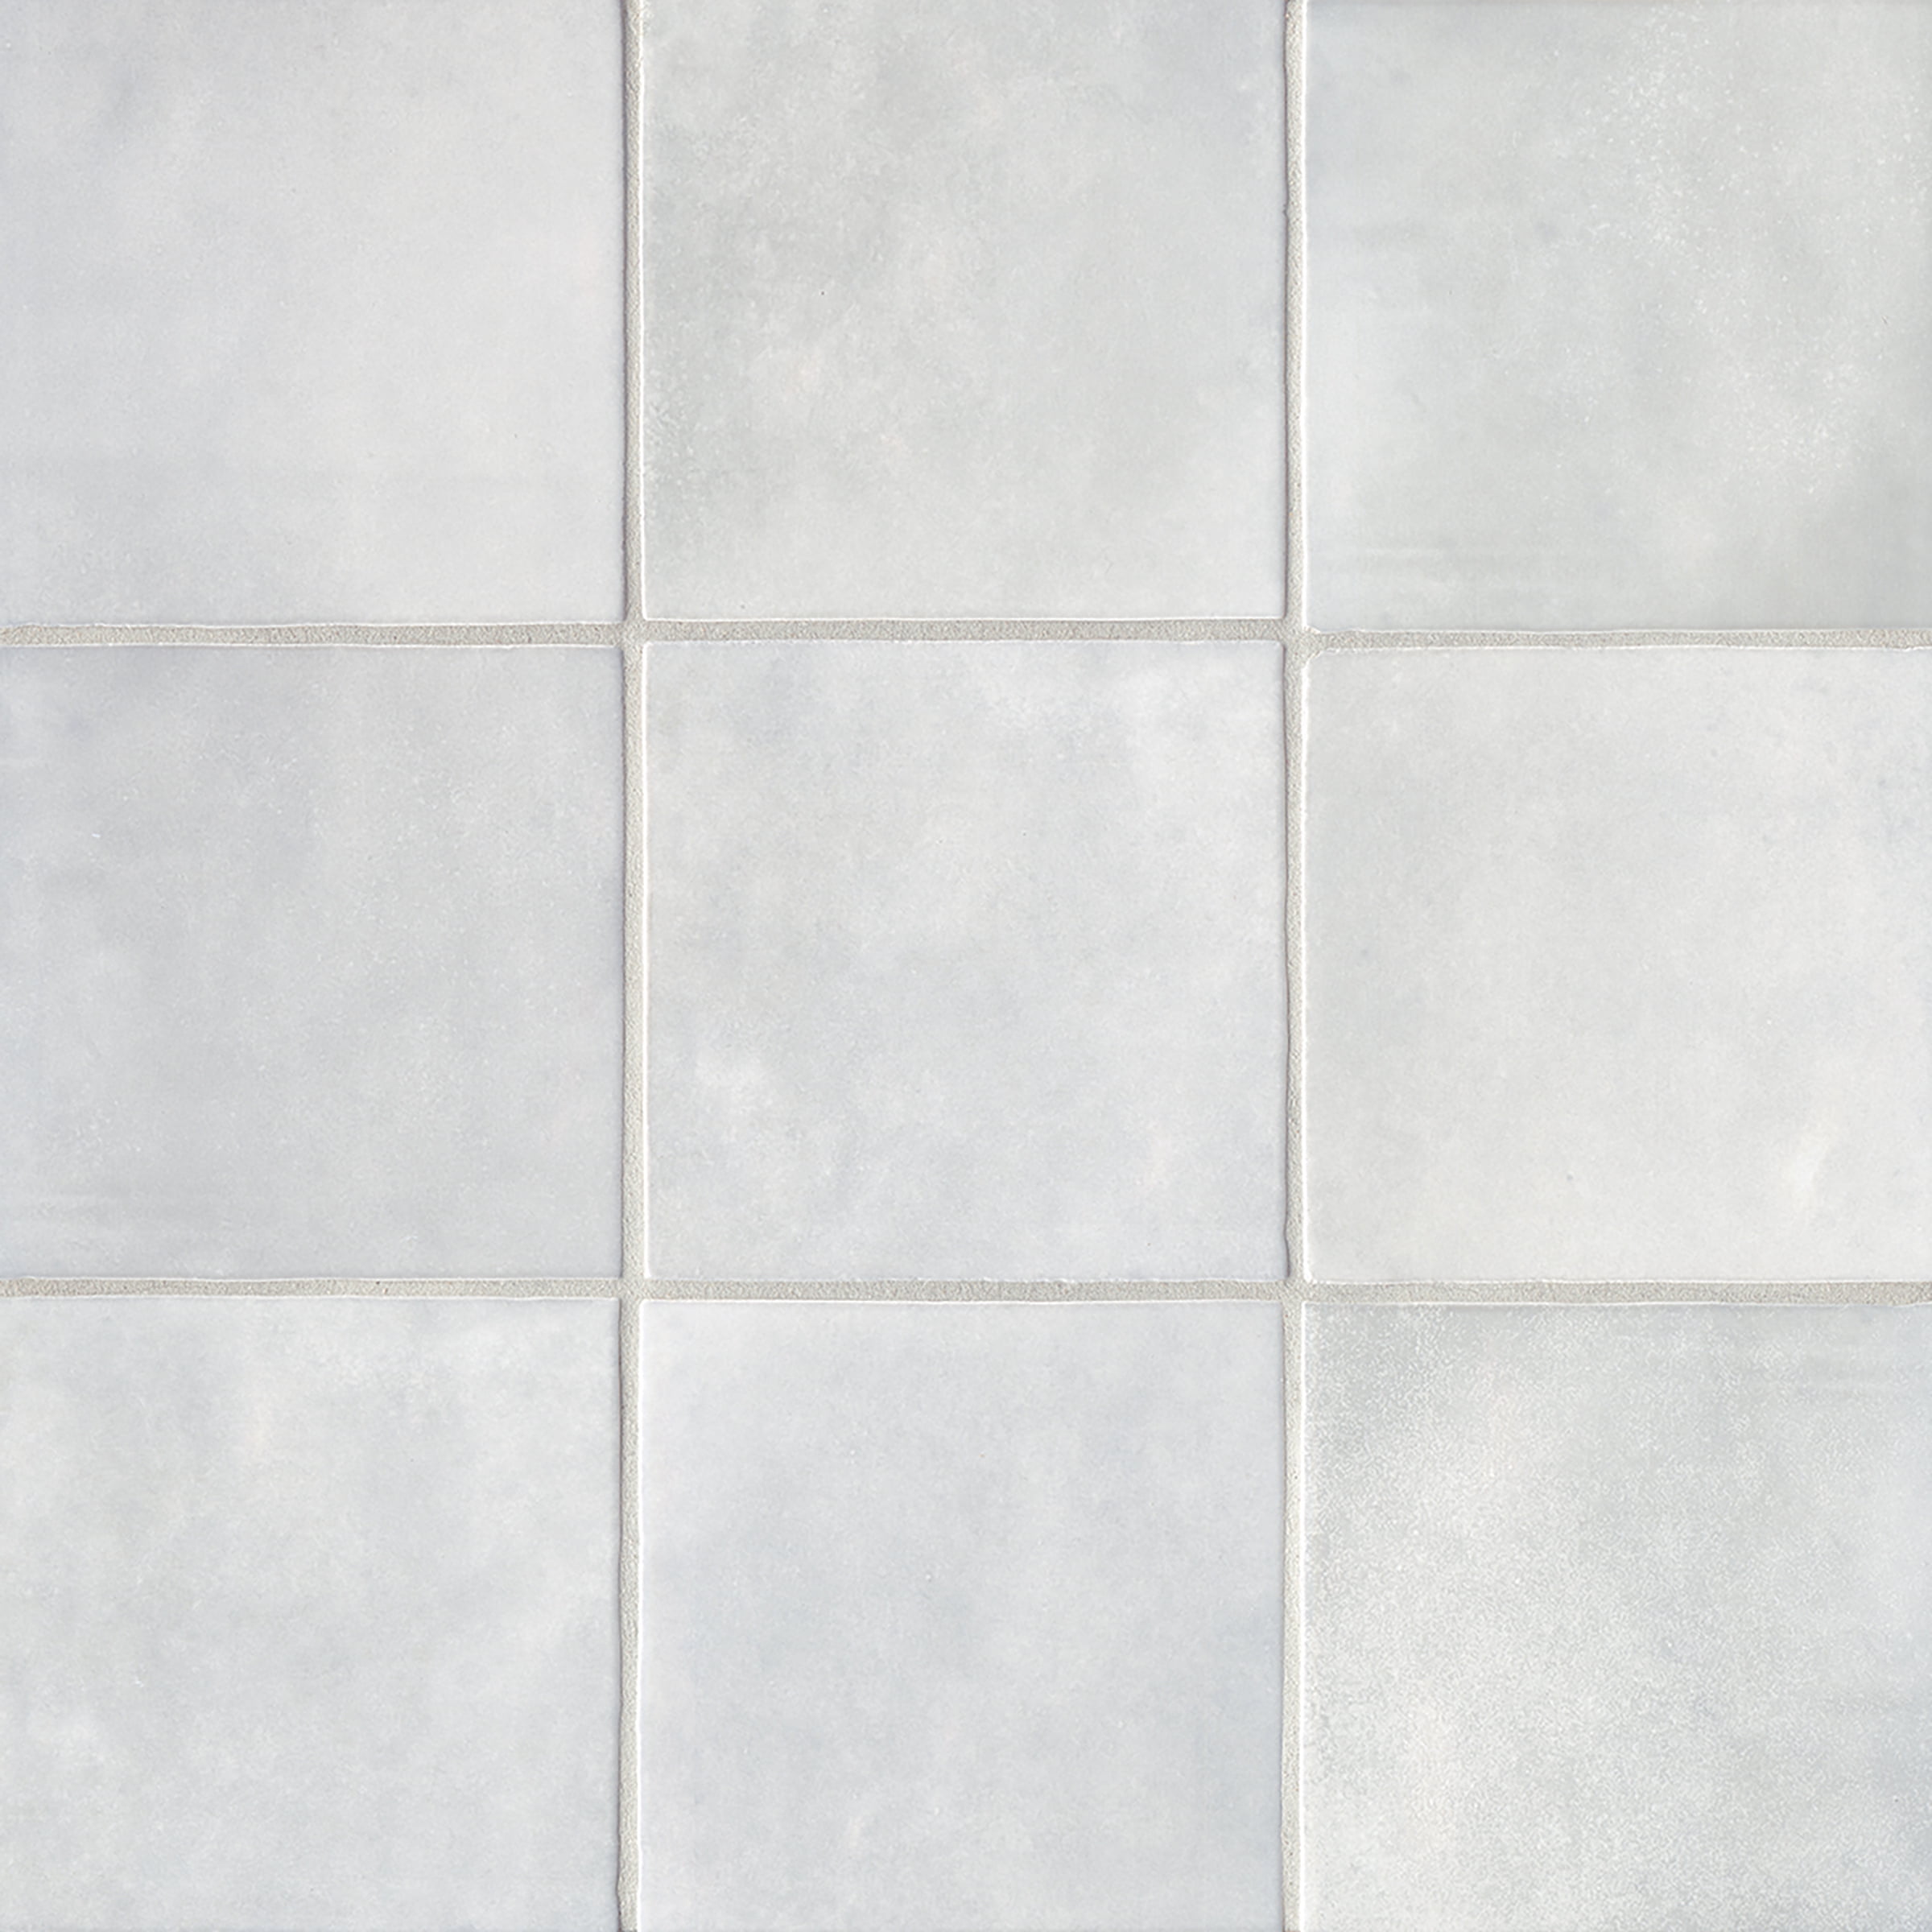 Cloe 5 x 5 Ceramic Tile in White